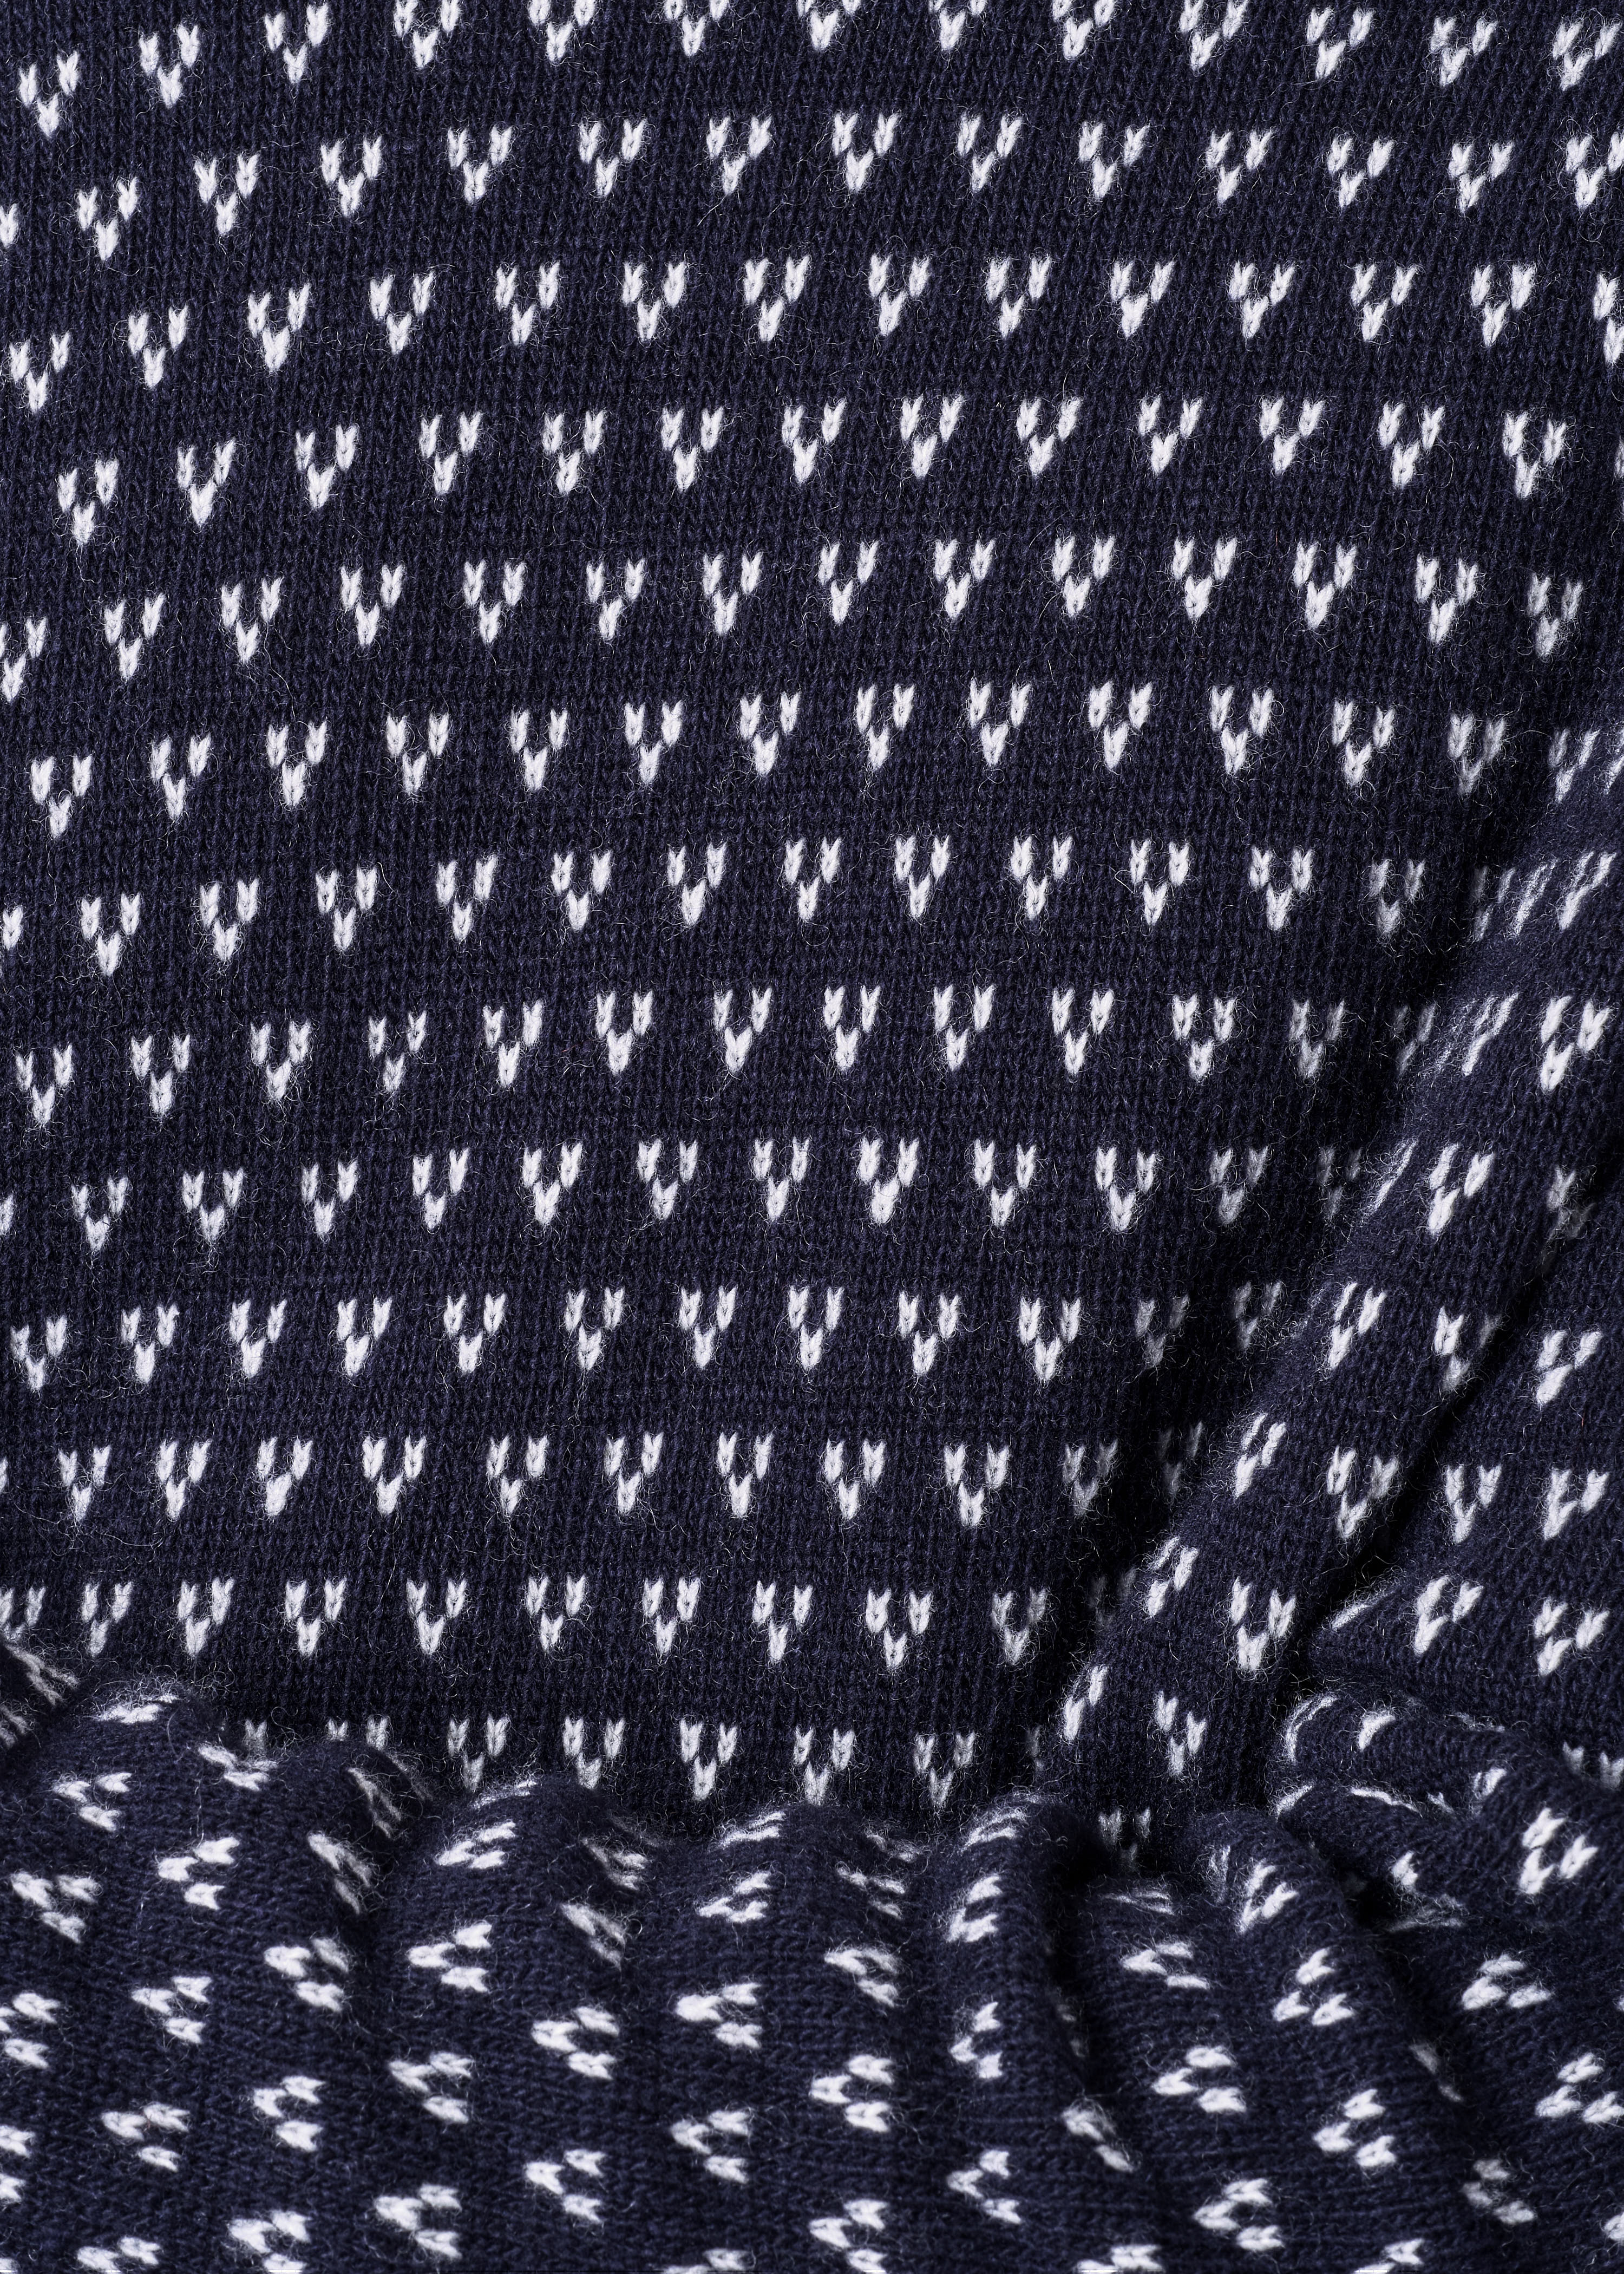 Herren-Strickpullover Hugo knit navy/cream (100% Wolle) 